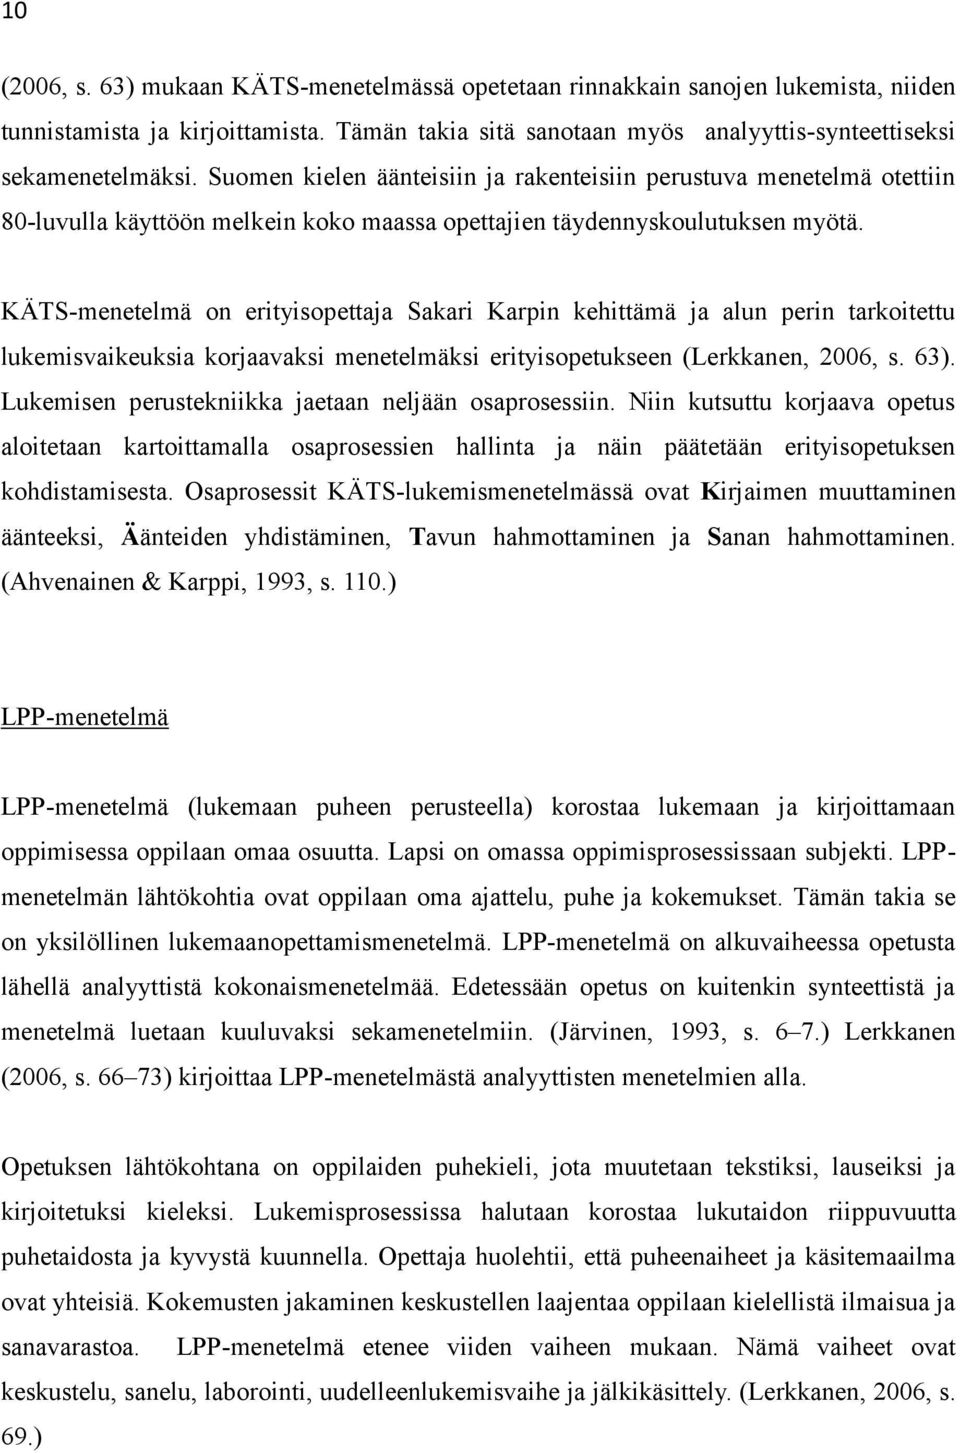 KÄTS-menetelmä on erityisopettaja Sakari Karpin kehittämä ja alun perin tarkoitettu lukemisvaikeuksia korjaavaksi menetelmäksi erityisopetukseen (Lerkkanen, 2006, s. 63).